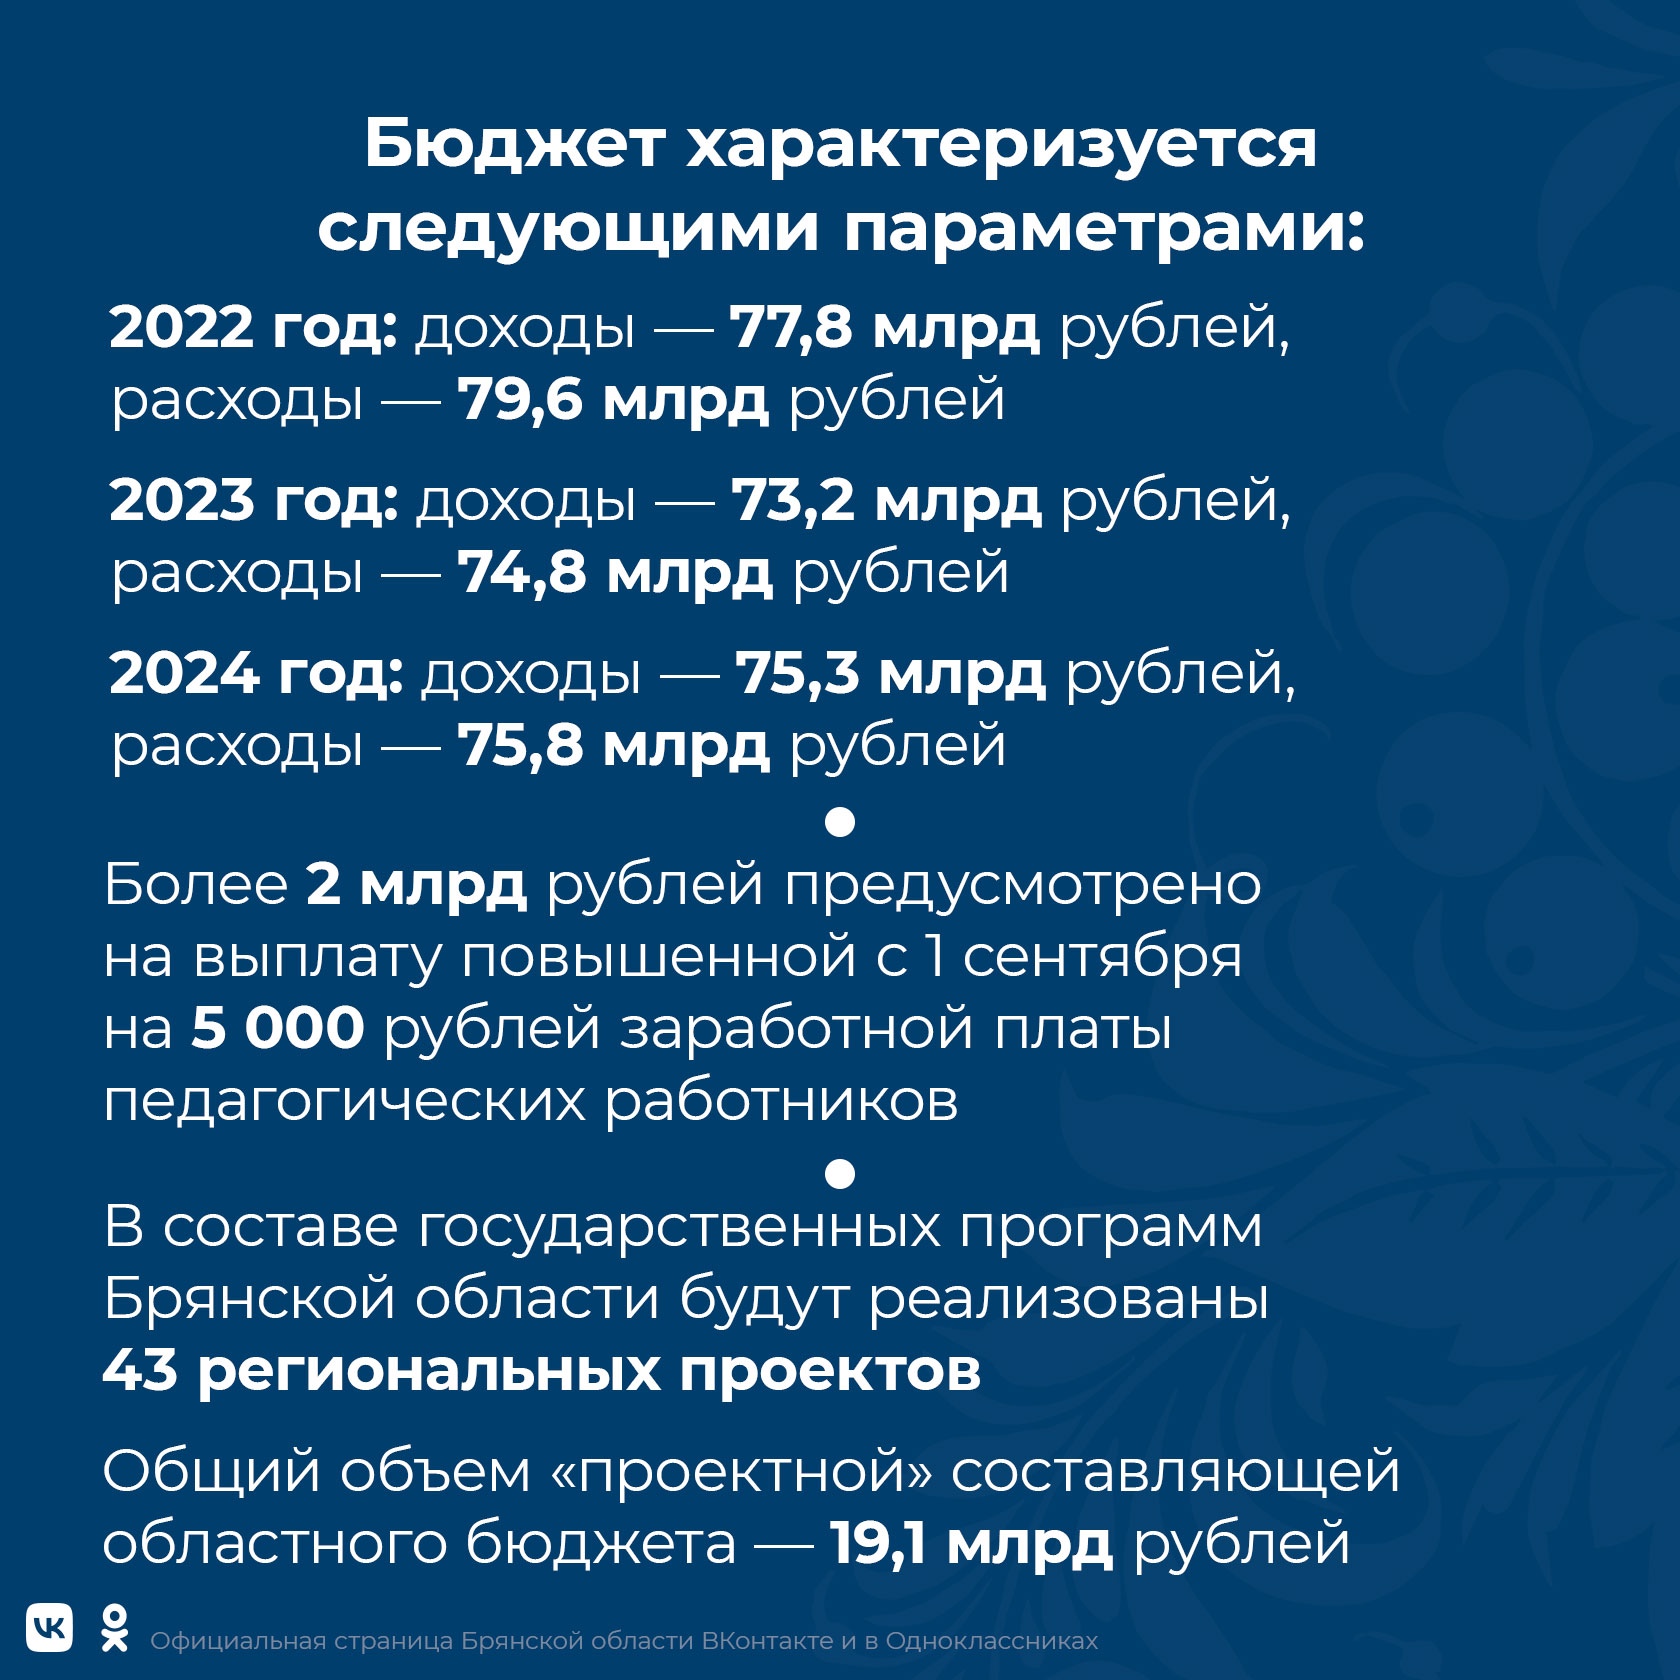 Бюджет Брянской области принят с дефицитом 2,3%